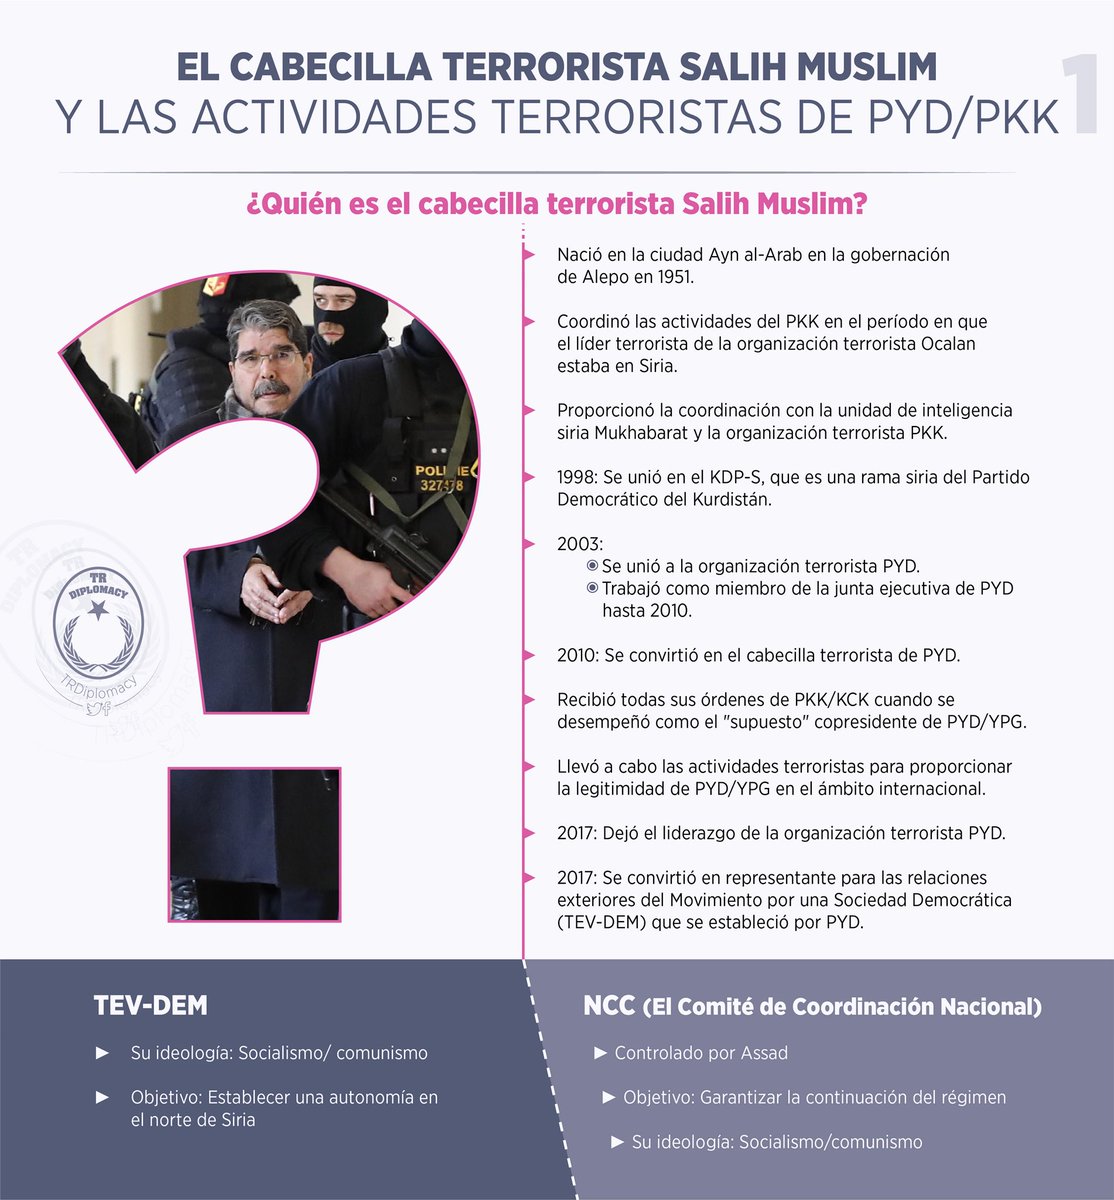 ¿Quien es Salih Muslim liberado por Chequia?